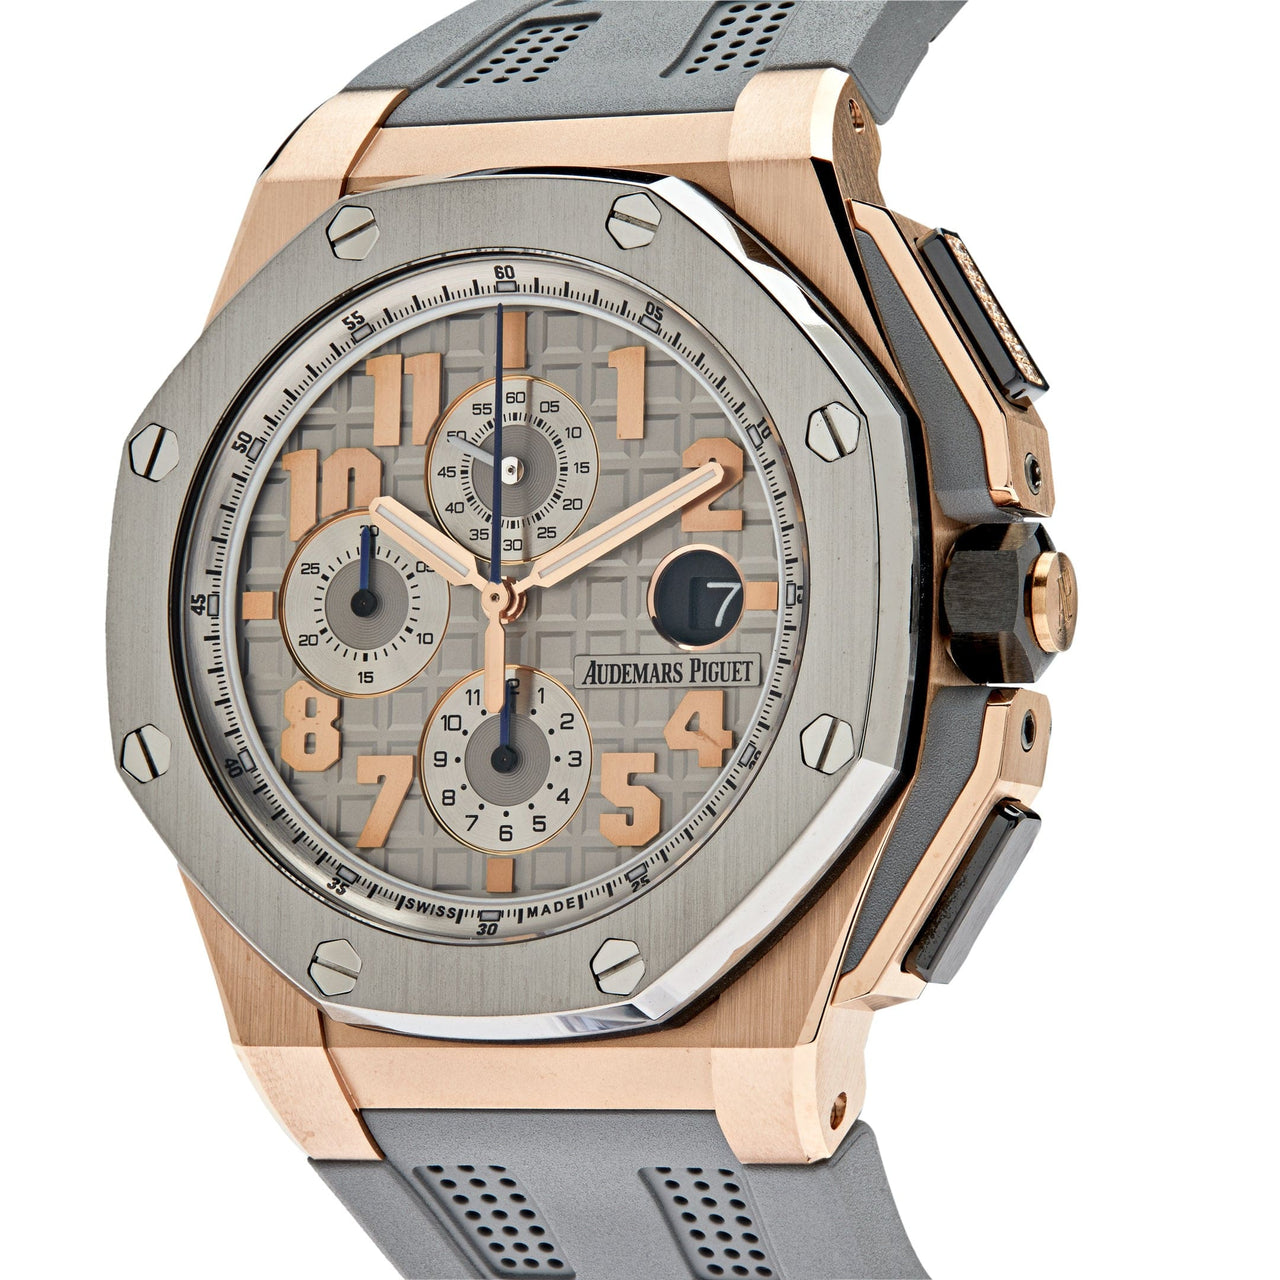 Luxury Watch Audemars Piguet Royal Oak Offshore Chronograph "Lebron James" Limited to 600pcs 26210OI.OO.A109CR.01 Wrist Aficionado